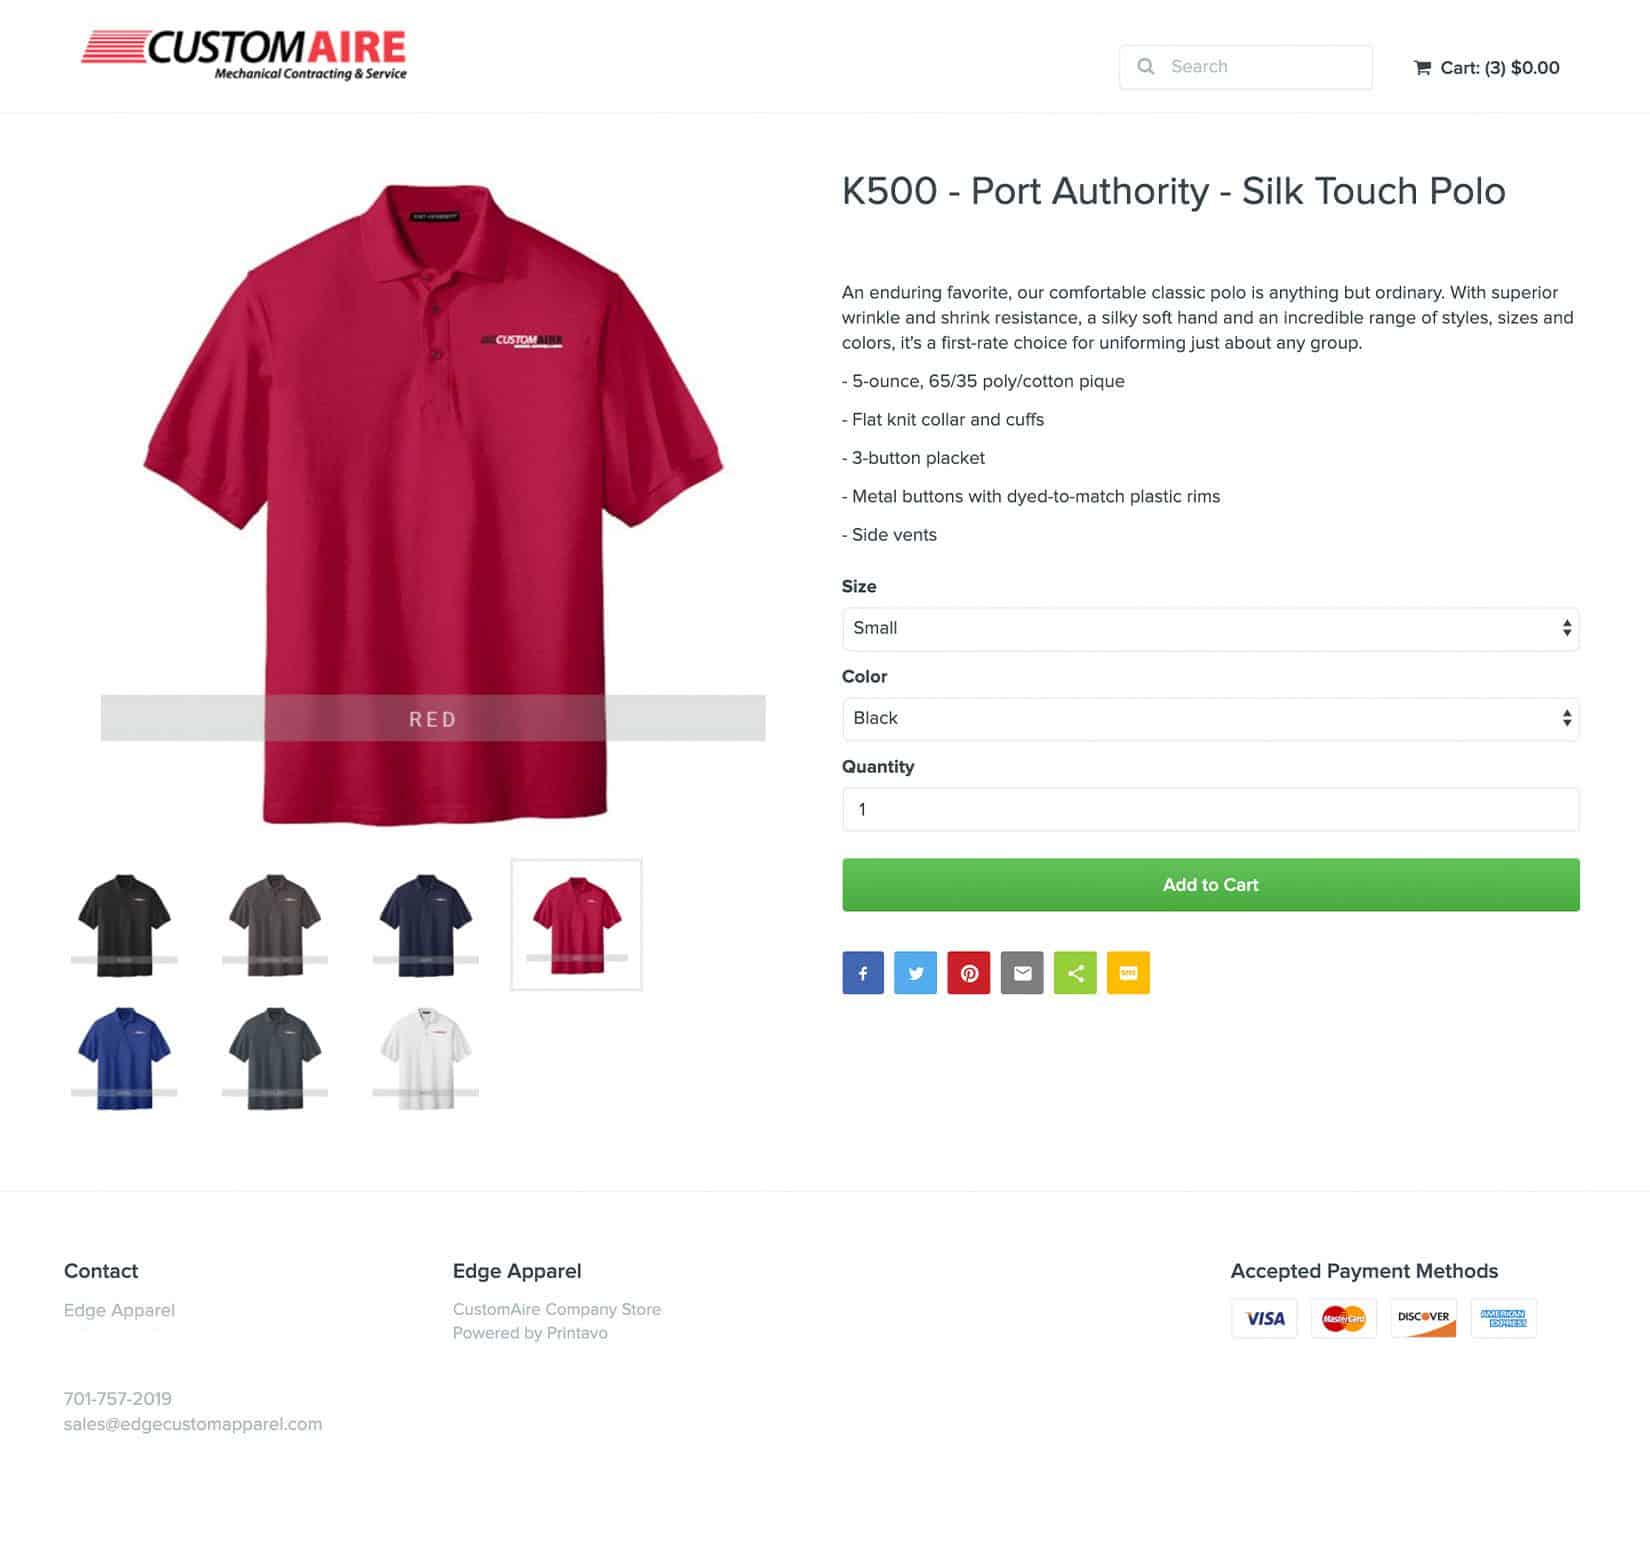 A screenshot of an online apparel store